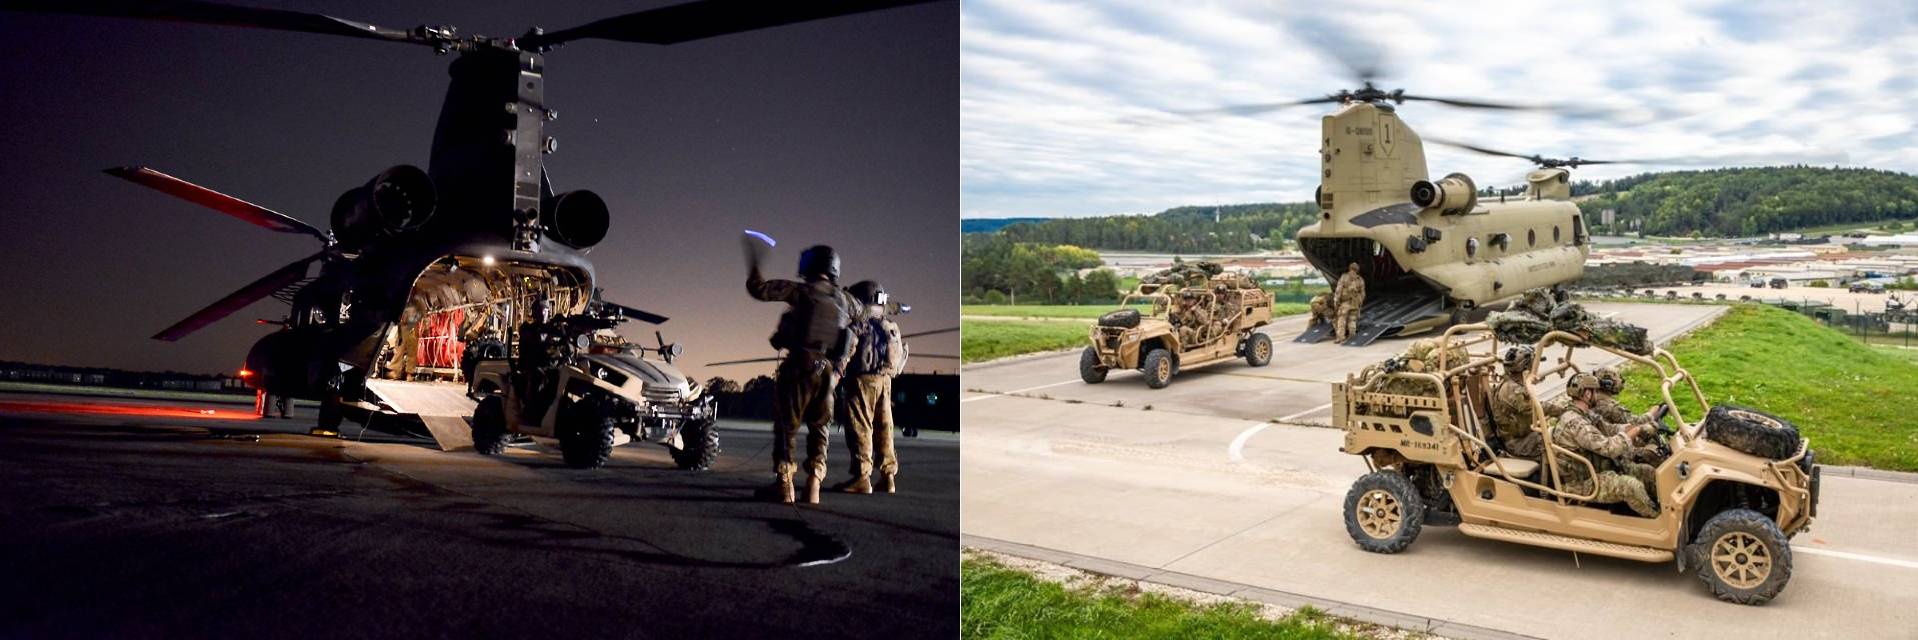 각종 차량을 활용하는 특수작전의 기동화 경향도 MH-47G의 수요를 높이게 되는 계기가 되었다. <출처: USSOCOM, US Army>